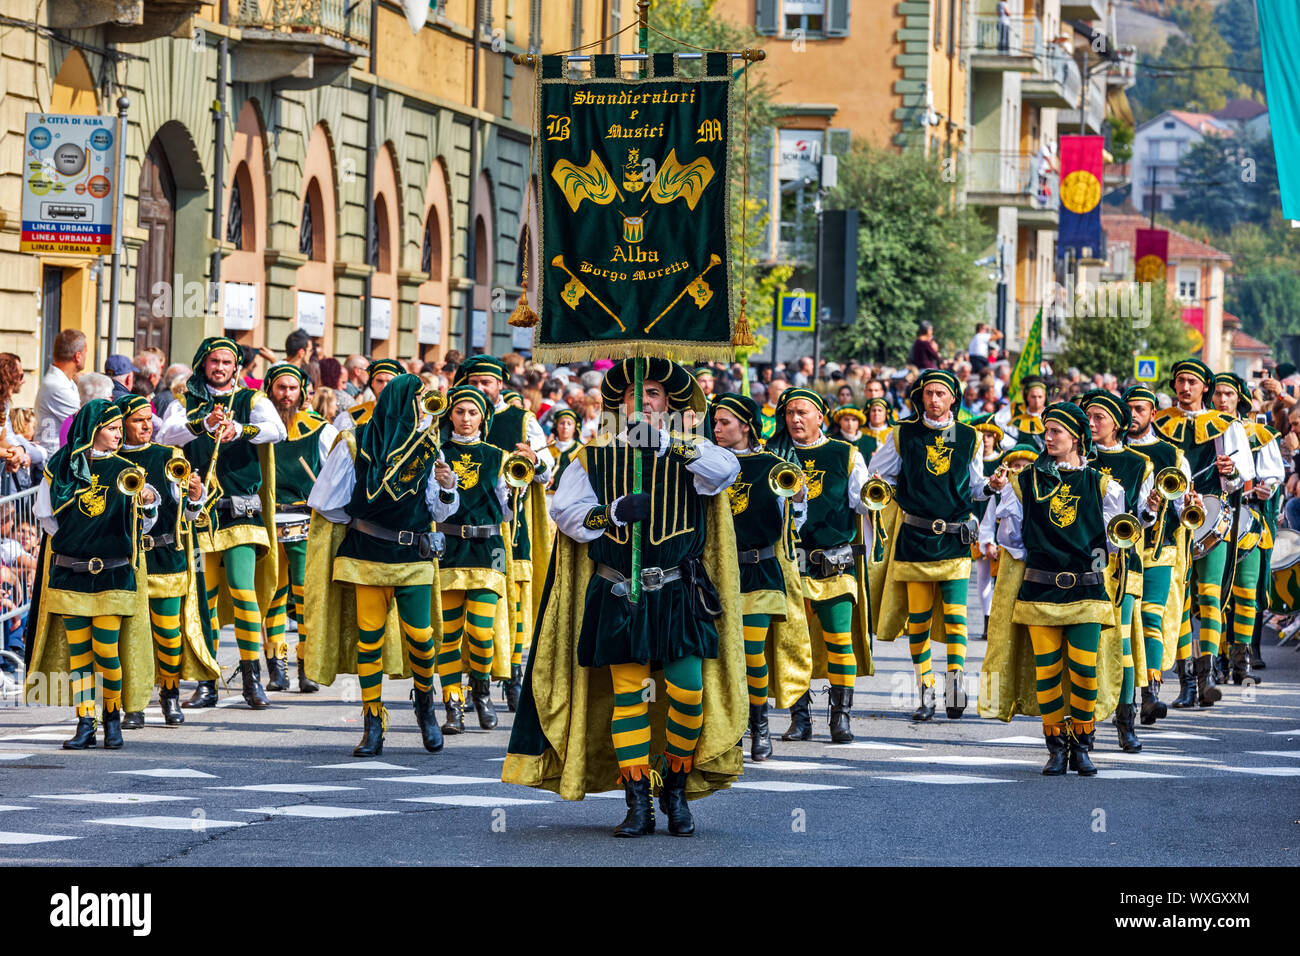 Processione in abiti storici sulla parata medievale - parte tradizionale di celebrazioni durante il bianco annuale Sagra del Tartufo di Alba, Italia. Foto Stock